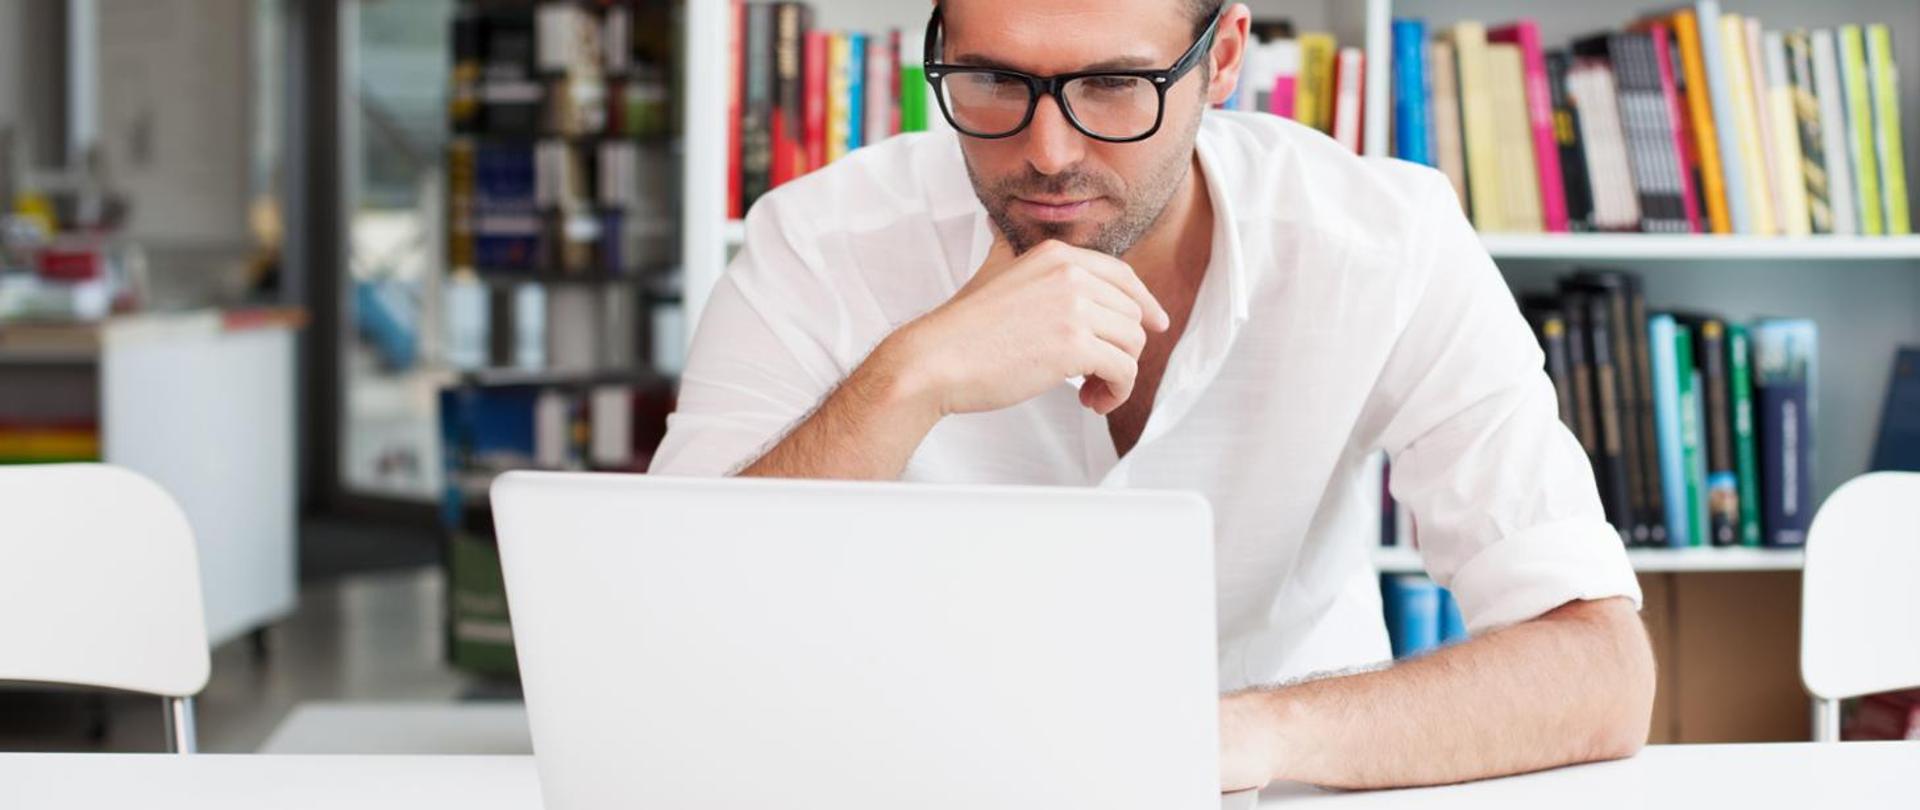 Zamyślony mężczyzna w okularach, ubrany na biało, siedzi przy stole i wpatruje się w ekran laptopa. Za nim regał z kolorowymi książkami oraz białe biurko.